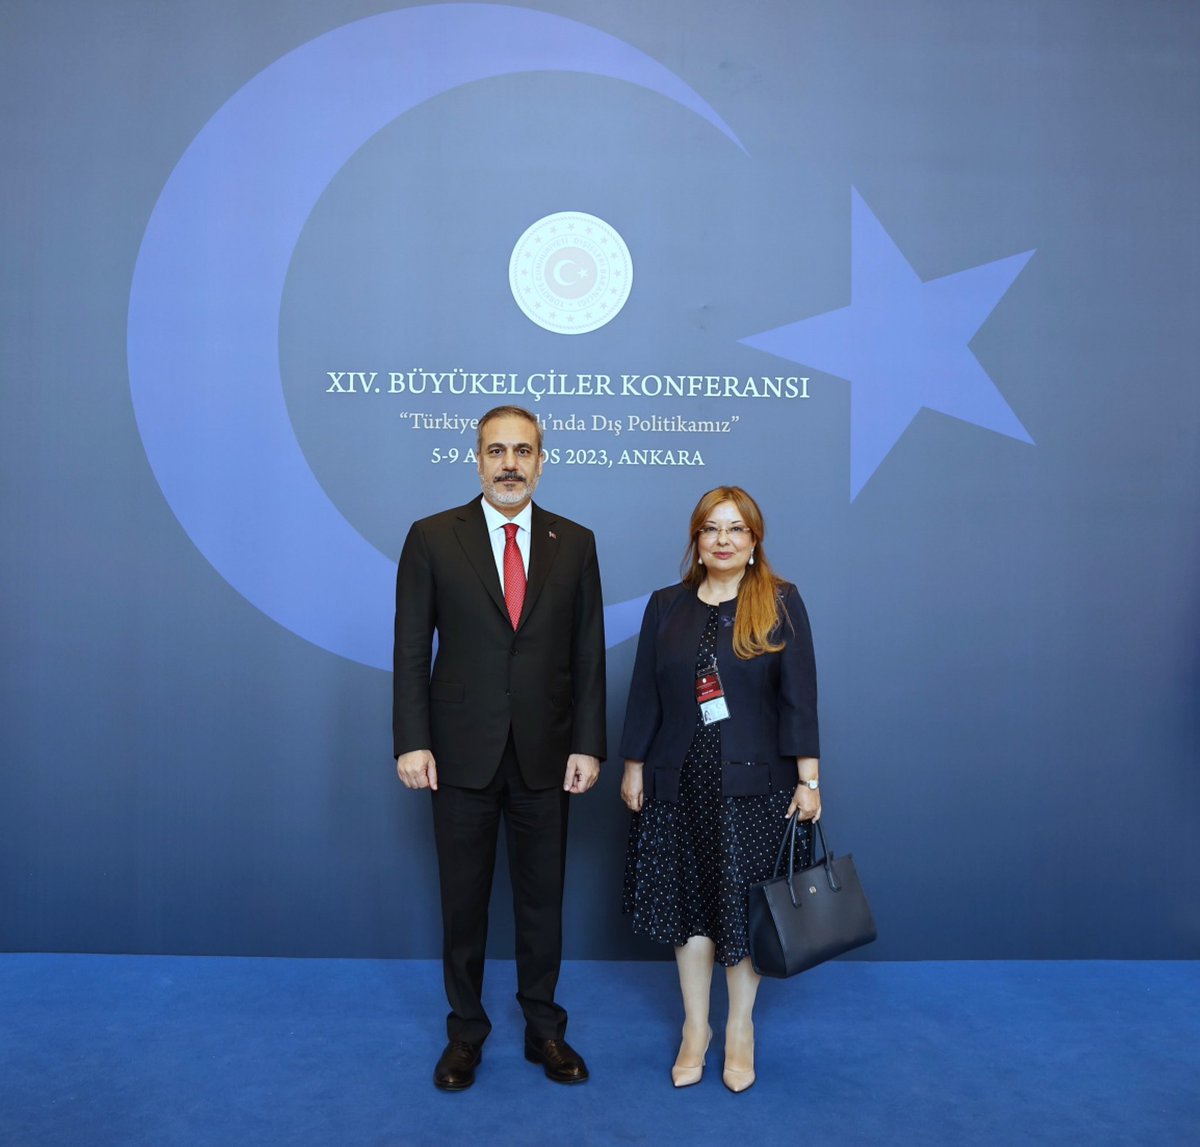 Sayın Bakanımız @HakanFidan ile XIV. Büyükelçiler Konferansından bir hatıra.
#BuyukelcilerKonferansı
#TürkiyeYüzyılı 
#DışPolitika